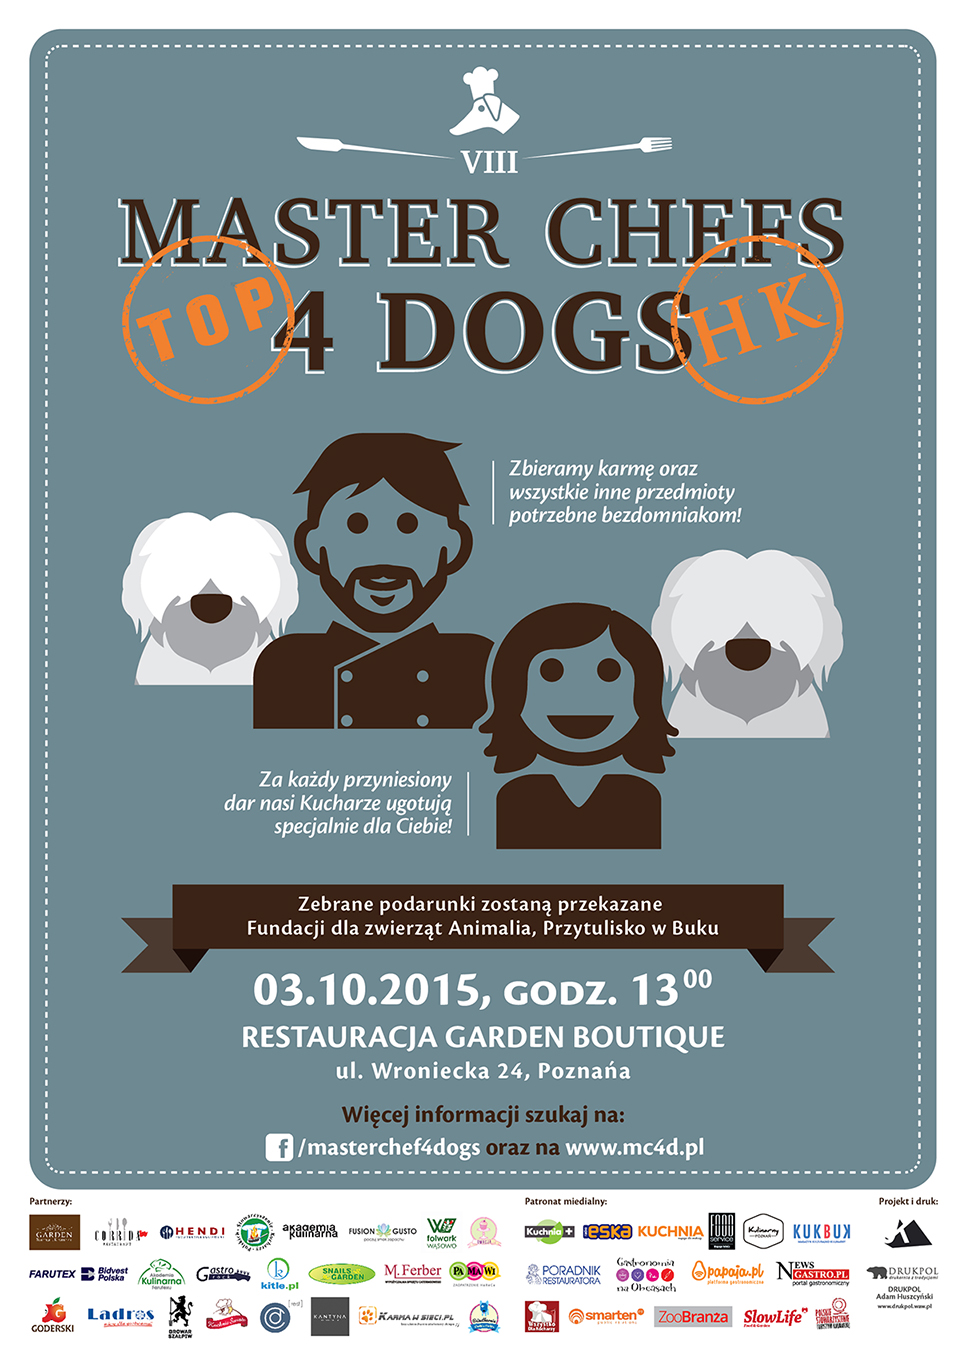 Master Chefs 4 Dogs –  8 edycja